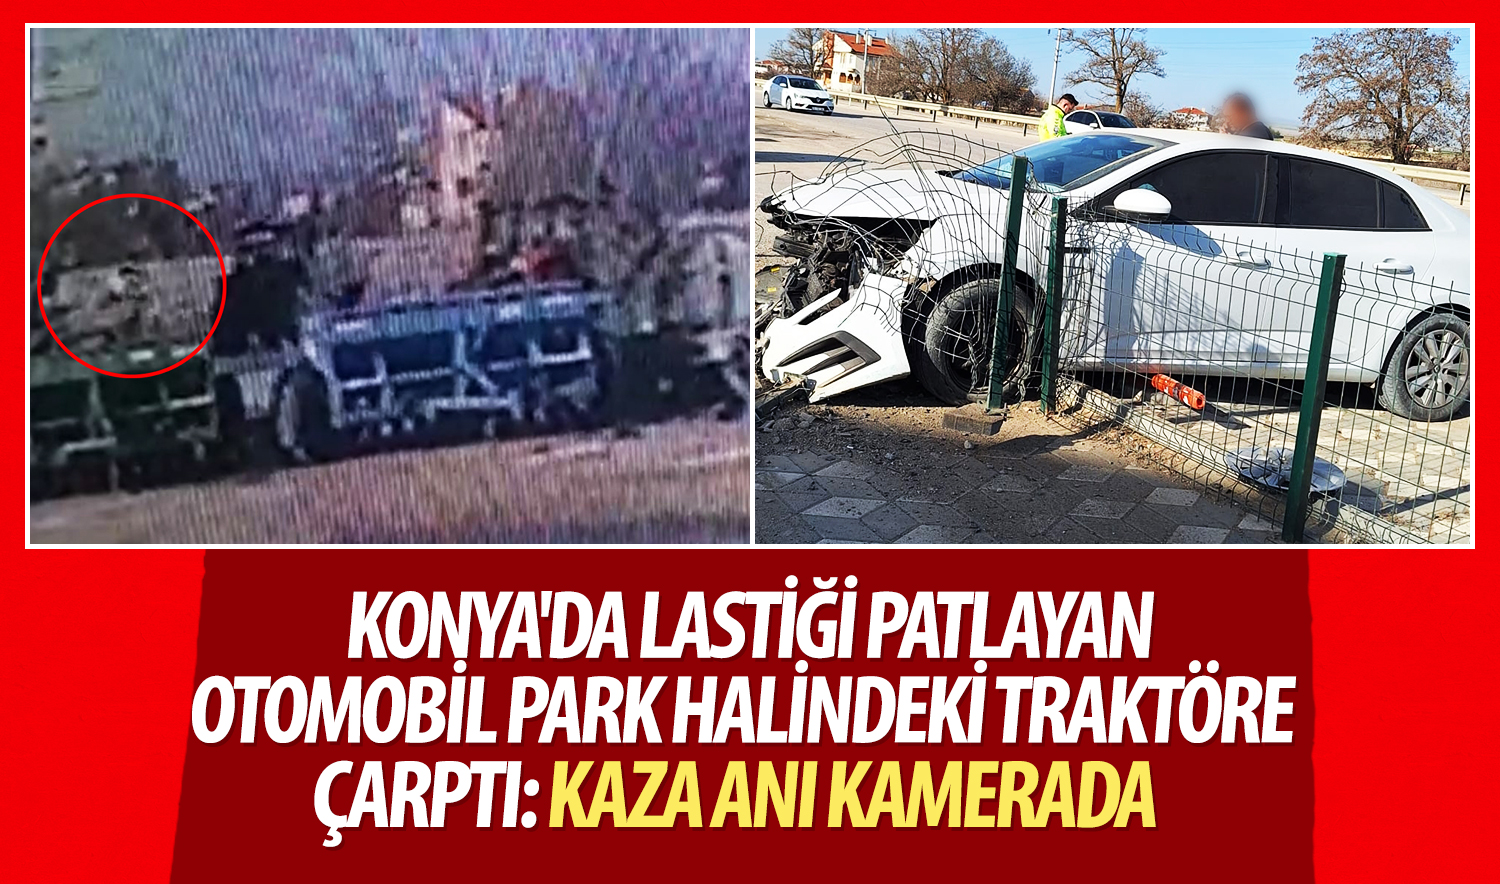 Konya’da lastiği patlayan otomobil park halindeki traktöre çarptı: Kaza anı kamerada